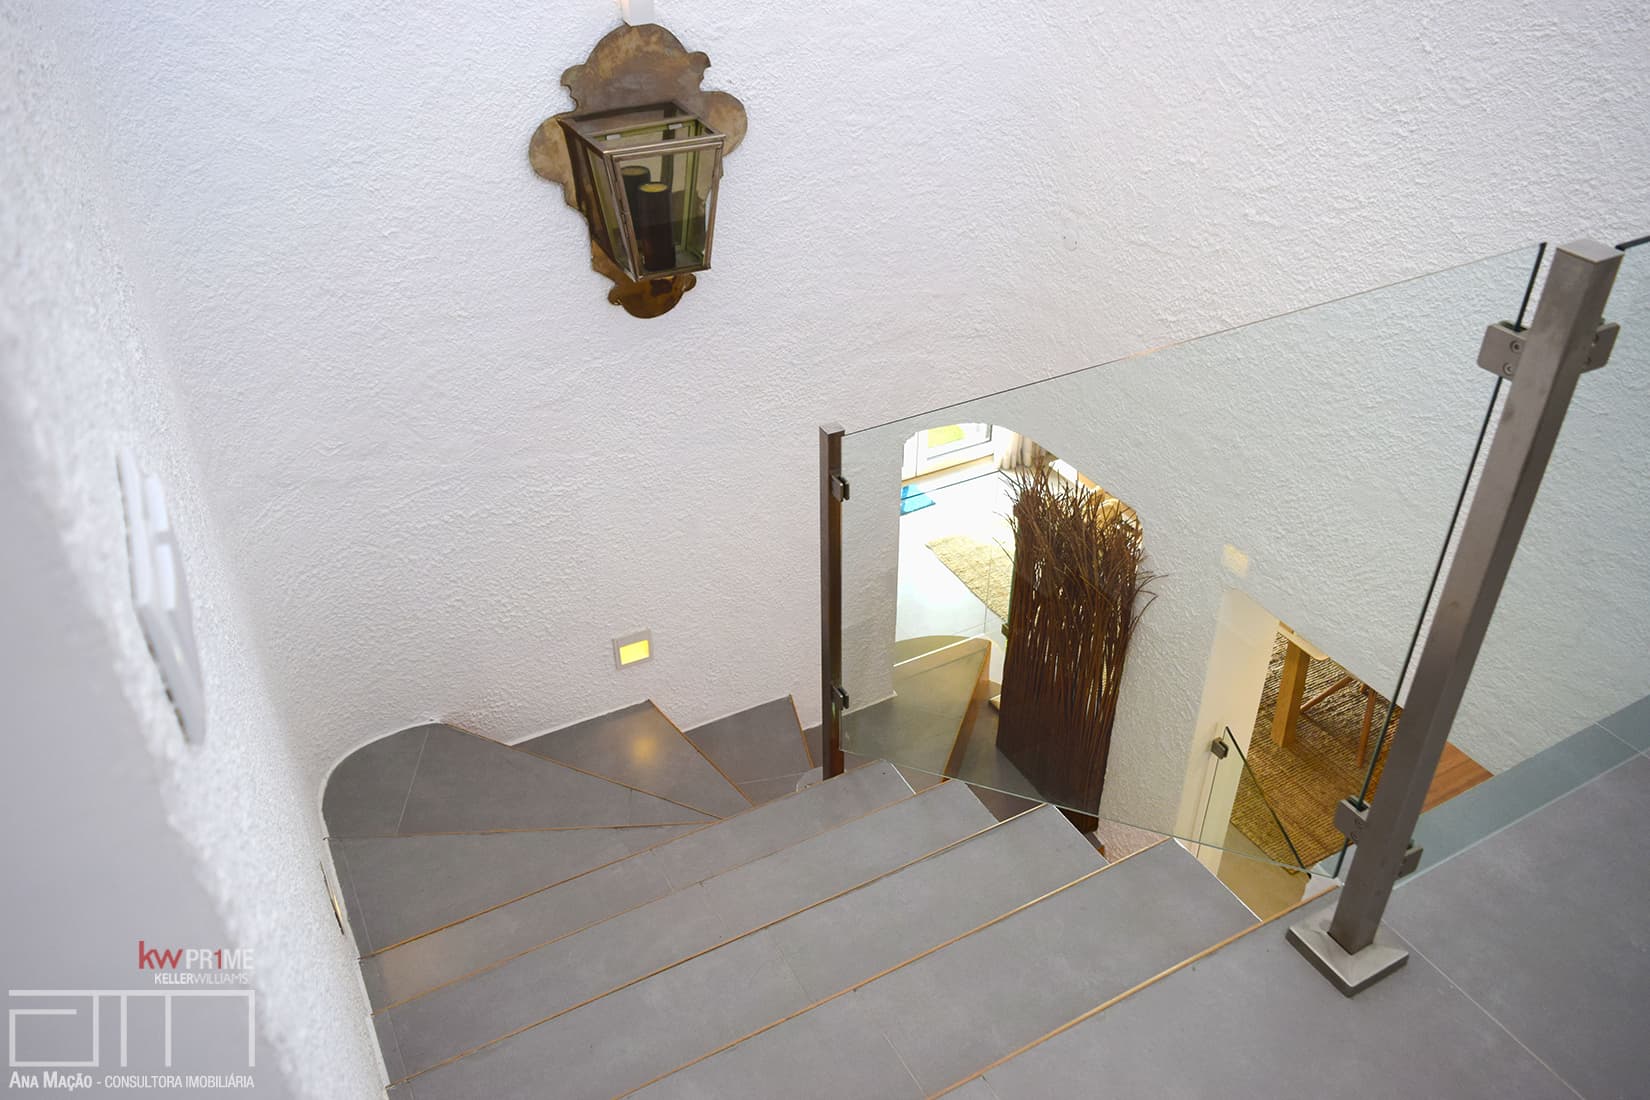 Vista das escadaria de ligação entre os dois pisos